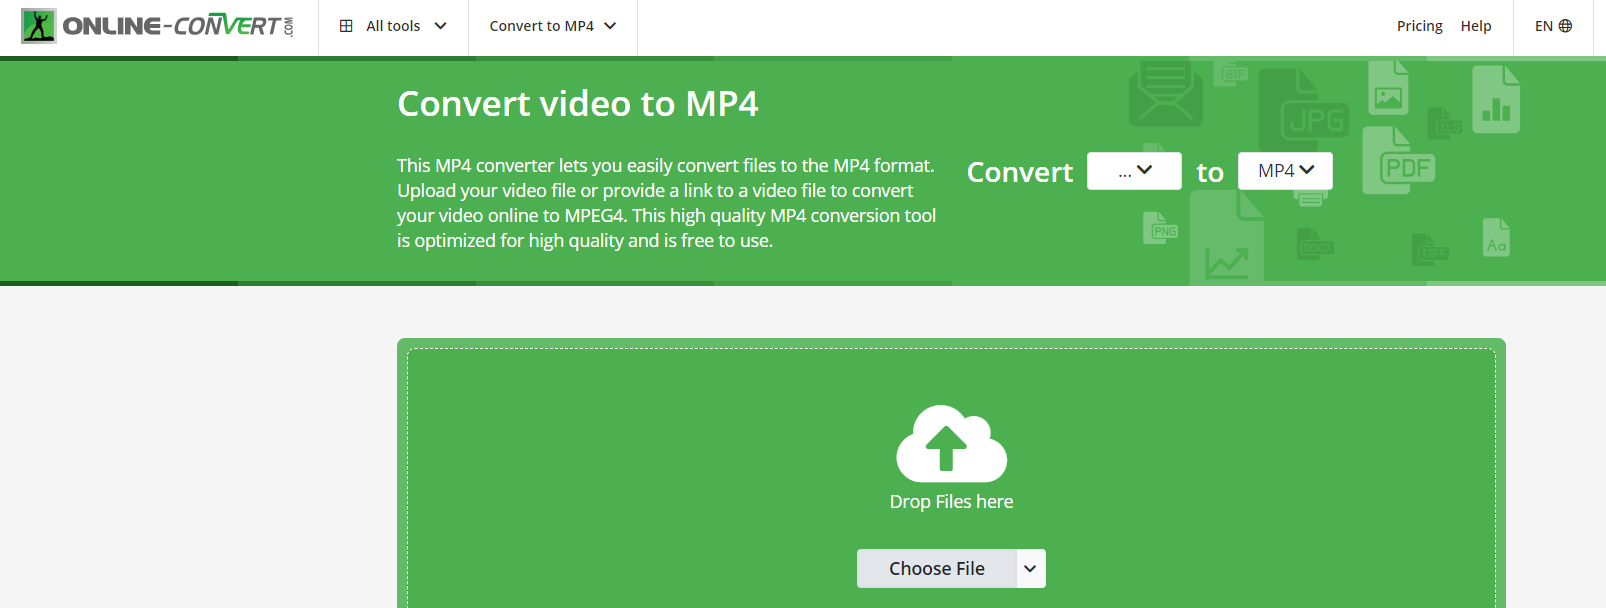 WebM to MP4 converter online-convert.com